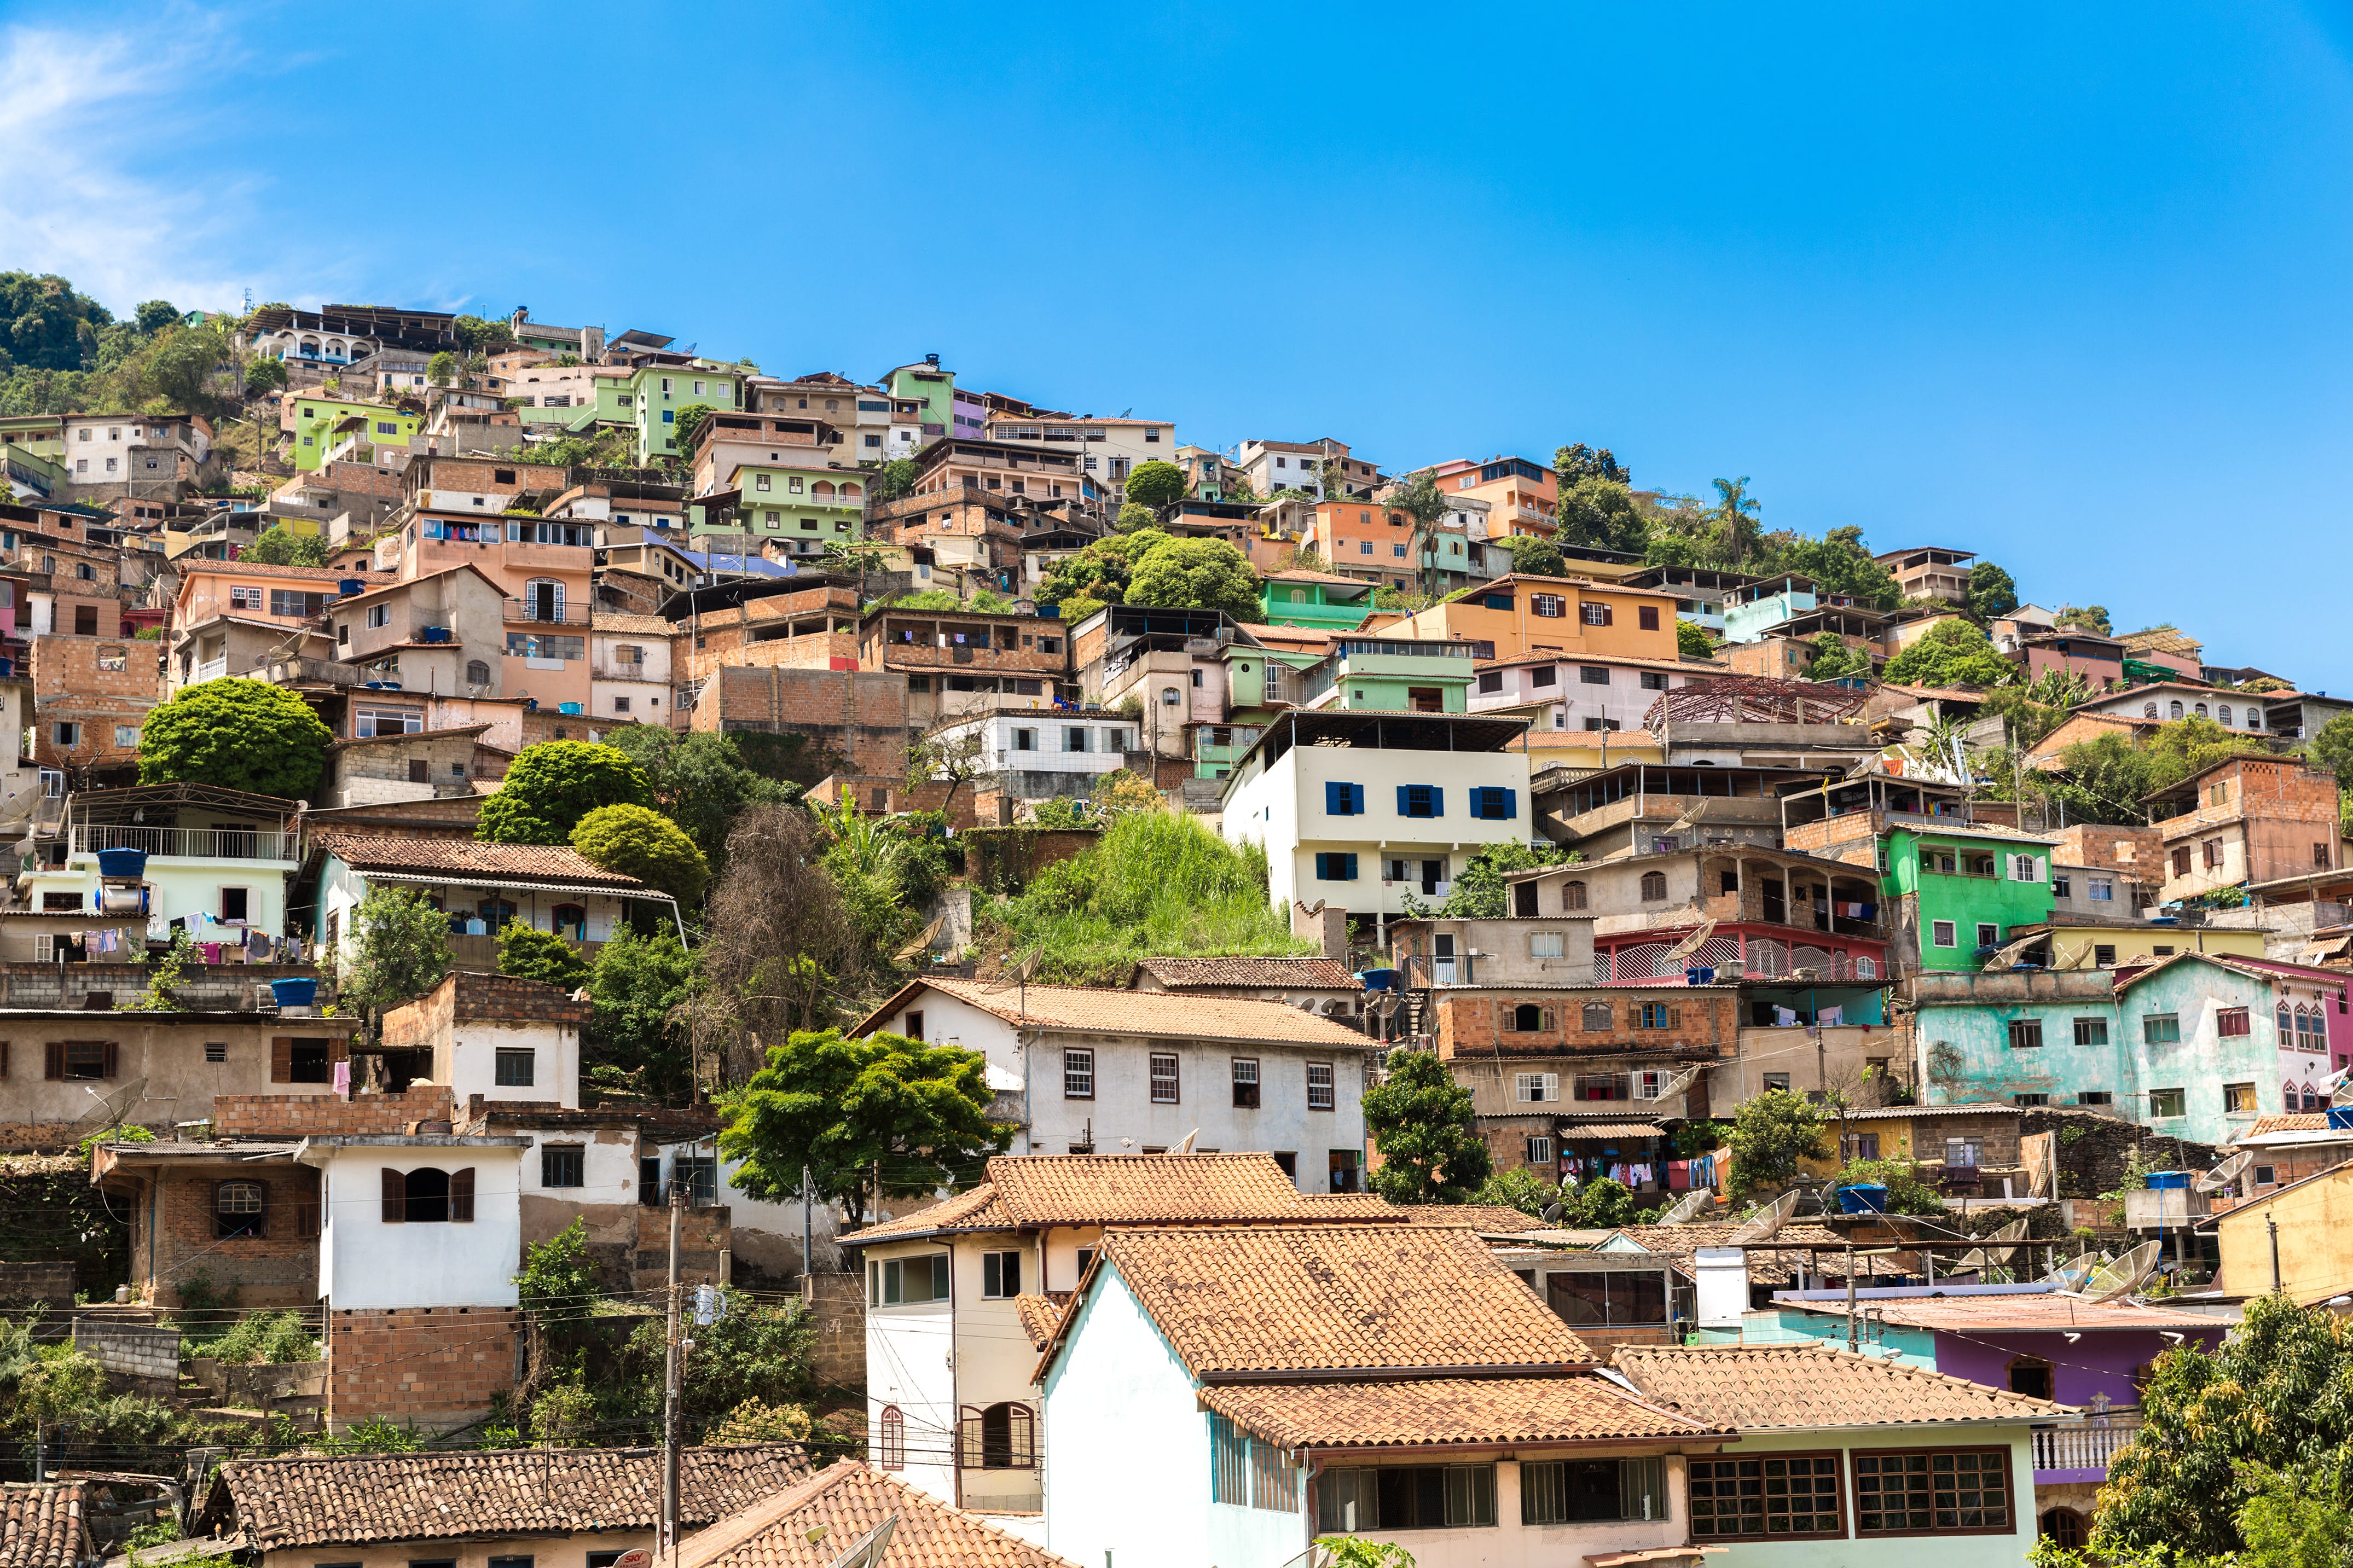 A imagem traz uma foto muito comum ao cenário brasieliro que são as favelas conhecidas mundialmente. O céu está limpo e bem azul. Na comunidade há um mix de cores entre as casas fazendo um lindo jogo de cor com predominância de tons marrons.